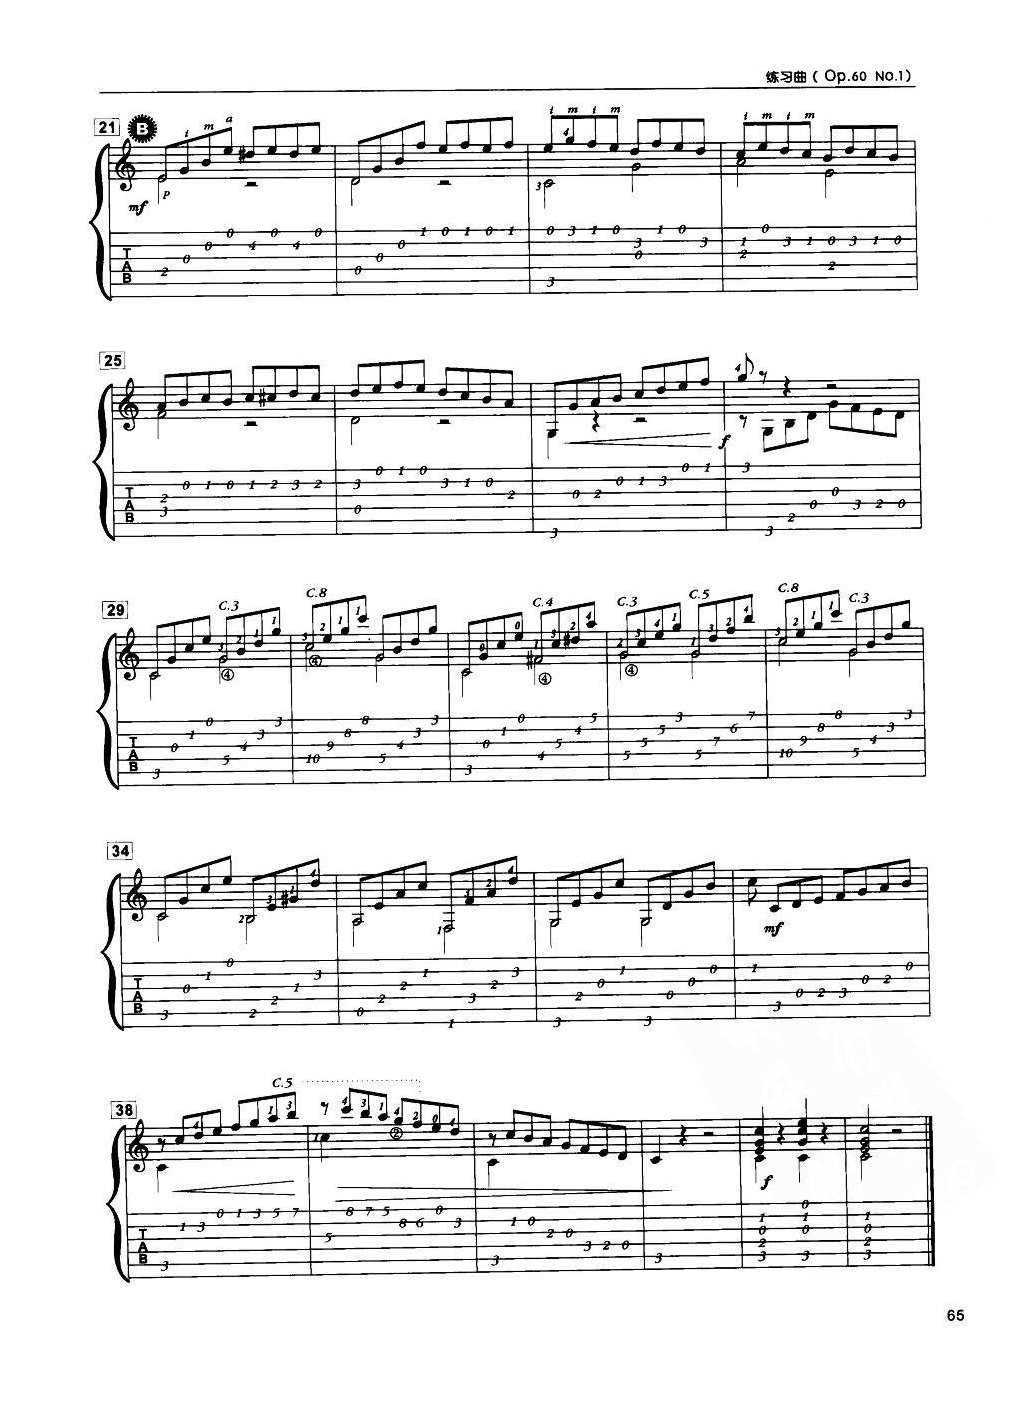 古典吉他练习曲《练习曲(Op.60 No.1)  卡尔卡西曲》